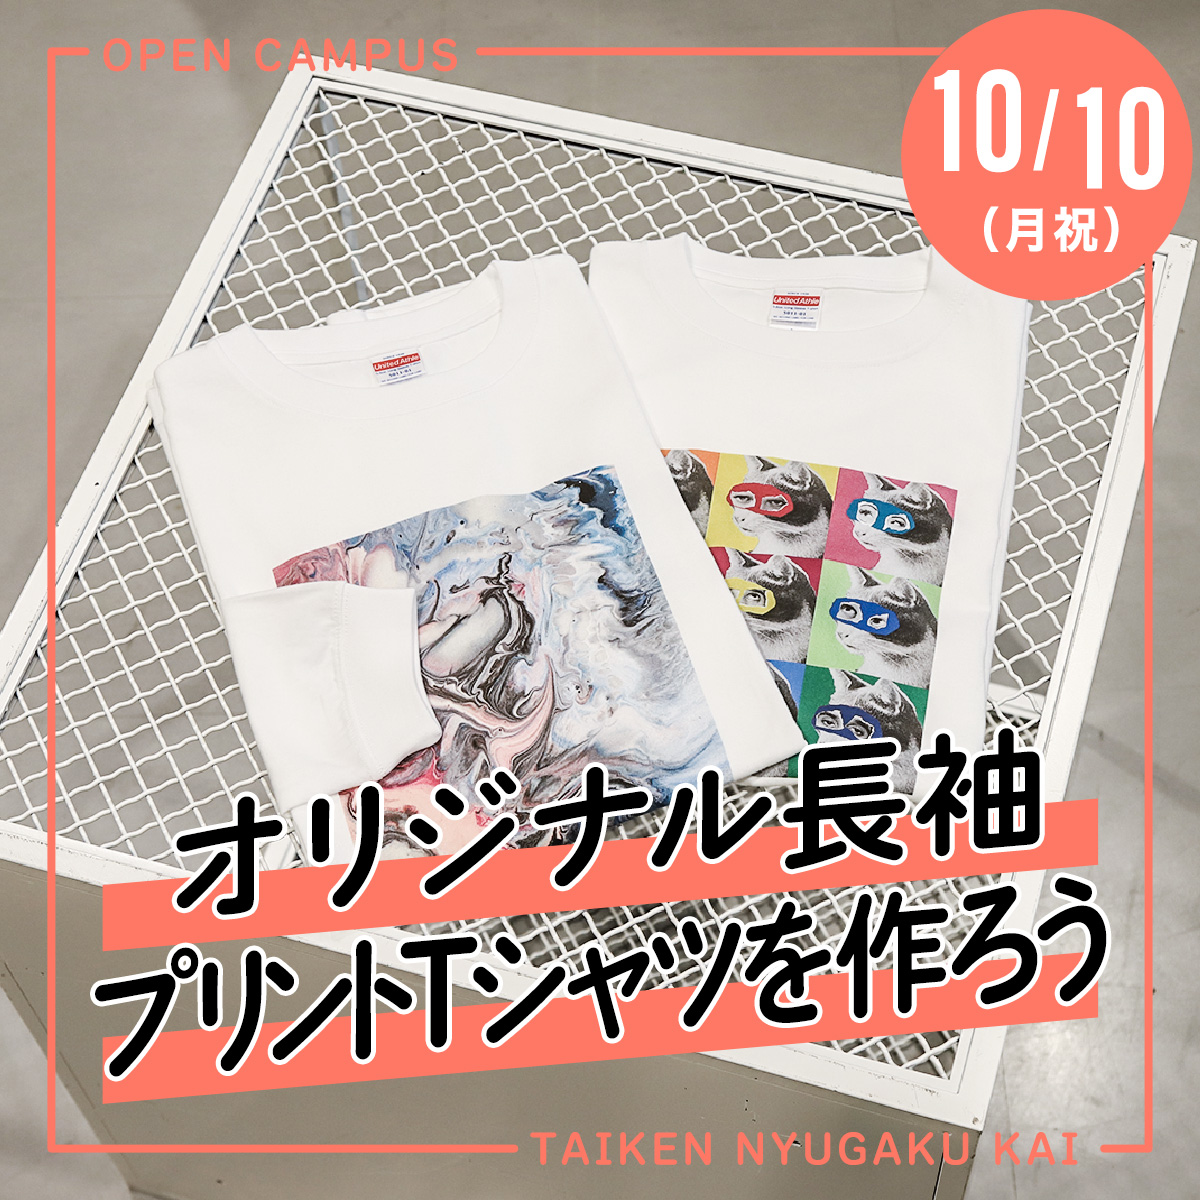 10/10（月祝）体験入学会「オリジナル長袖プリントTシャツを作ろう」が開催されます！